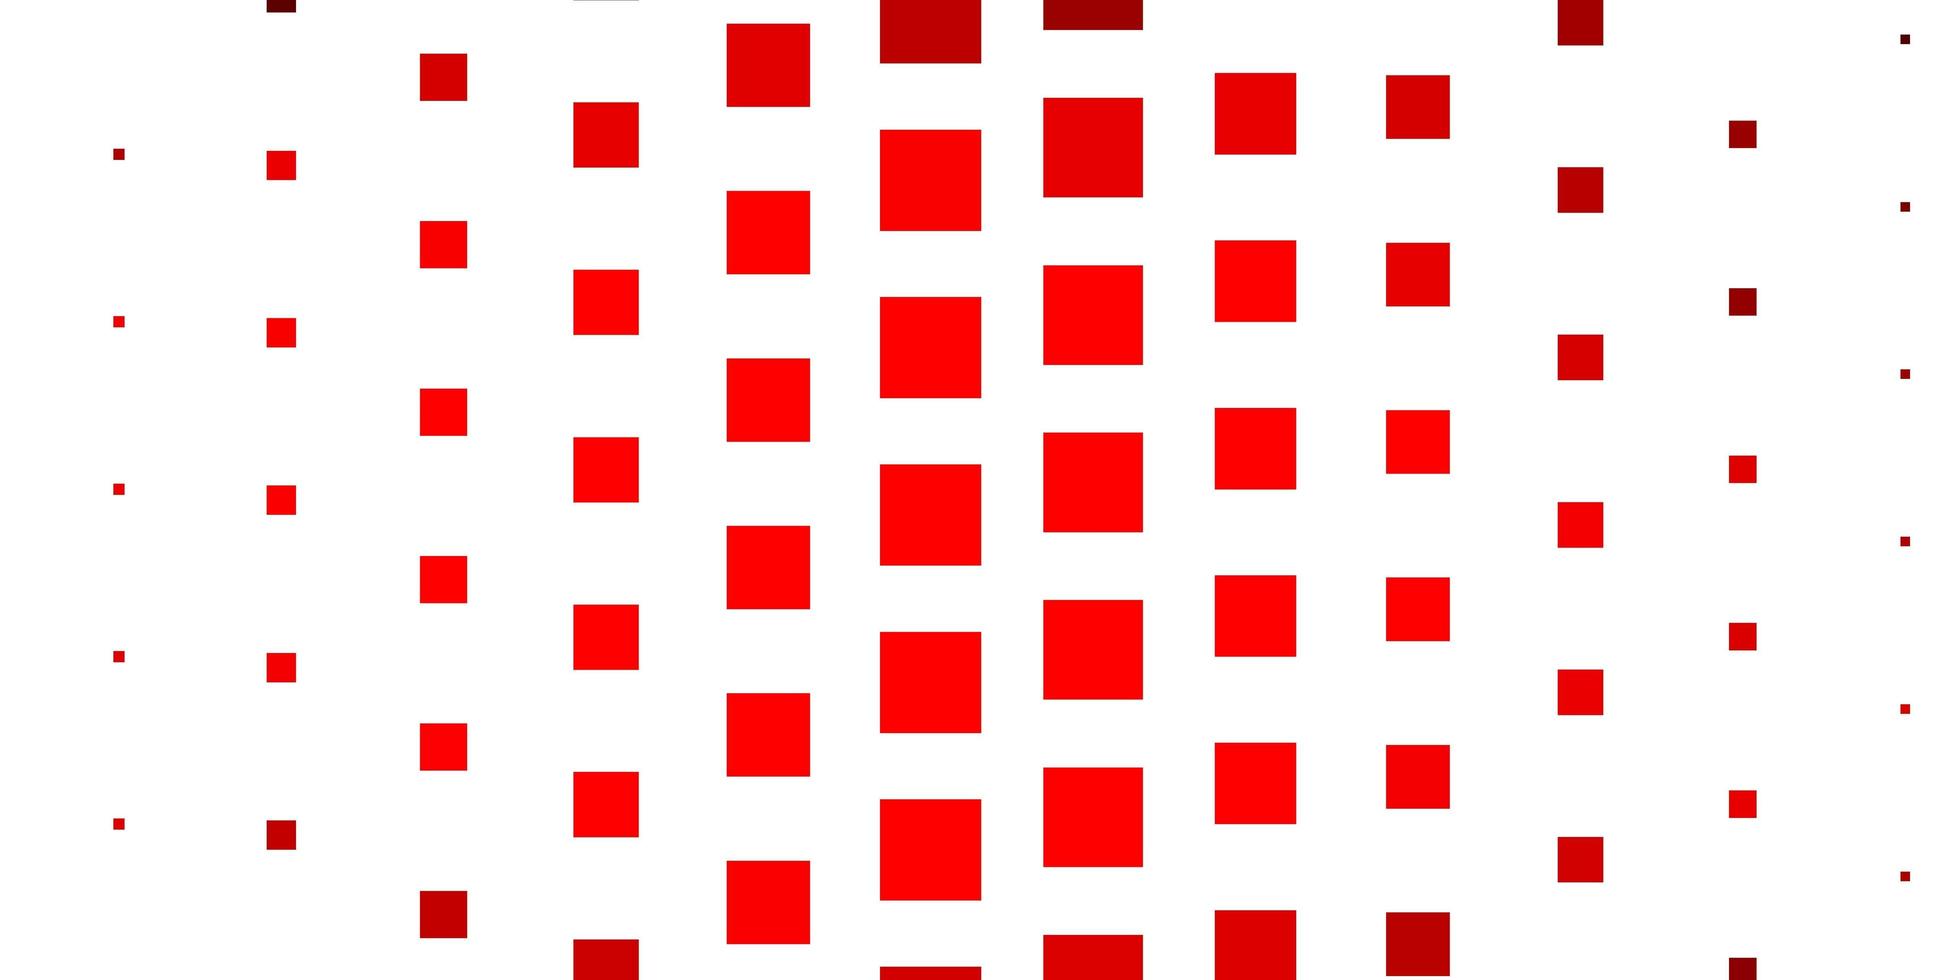 padrão de vetor vermelho escuro em estilo quadrado. ilustração gradiente abstrata com retângulos coloridos. padrão para sites, páginas de destino.